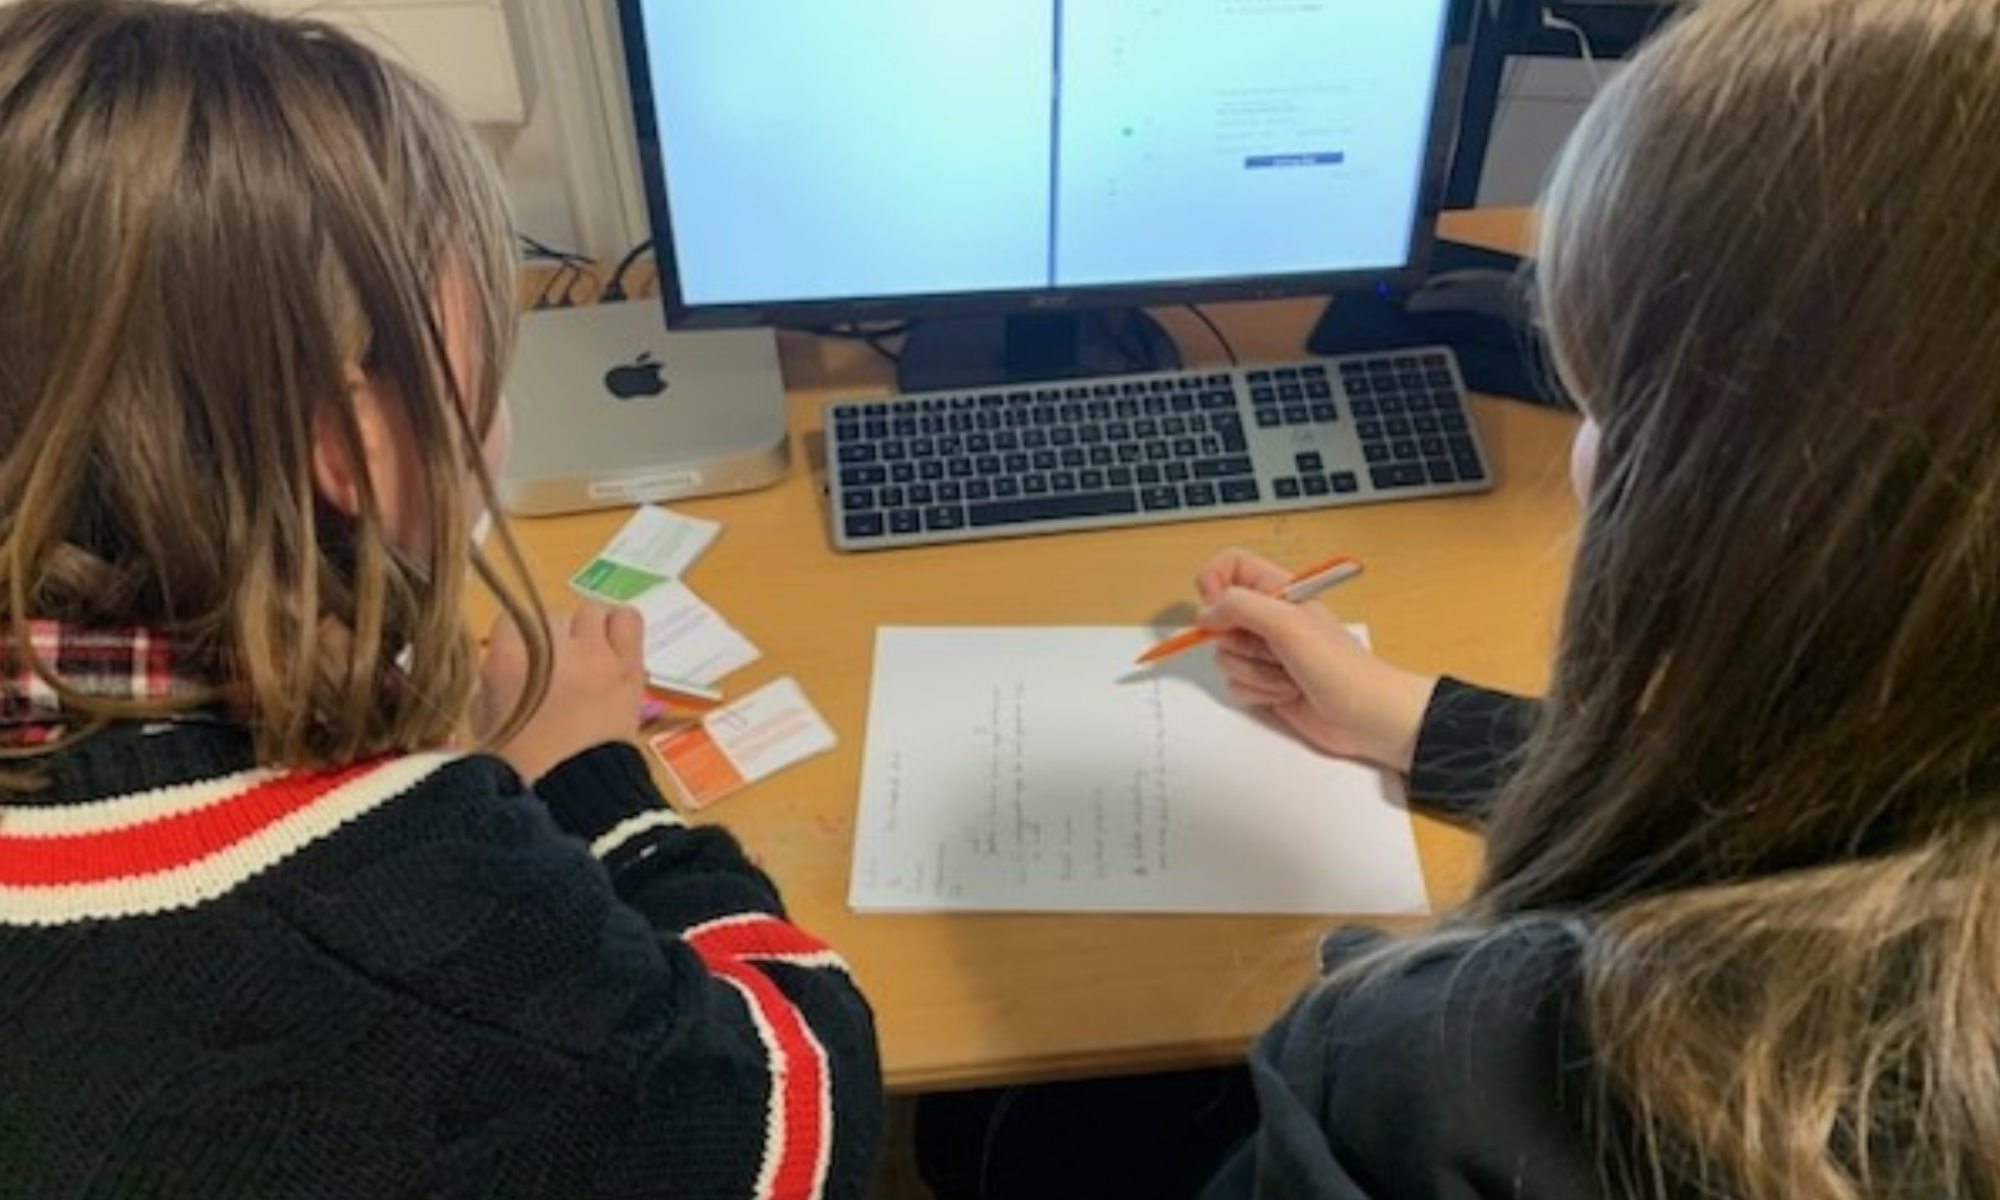 Zwei Personen sitzen an einem PC und schreiben etwas auf ein Blatt Papier